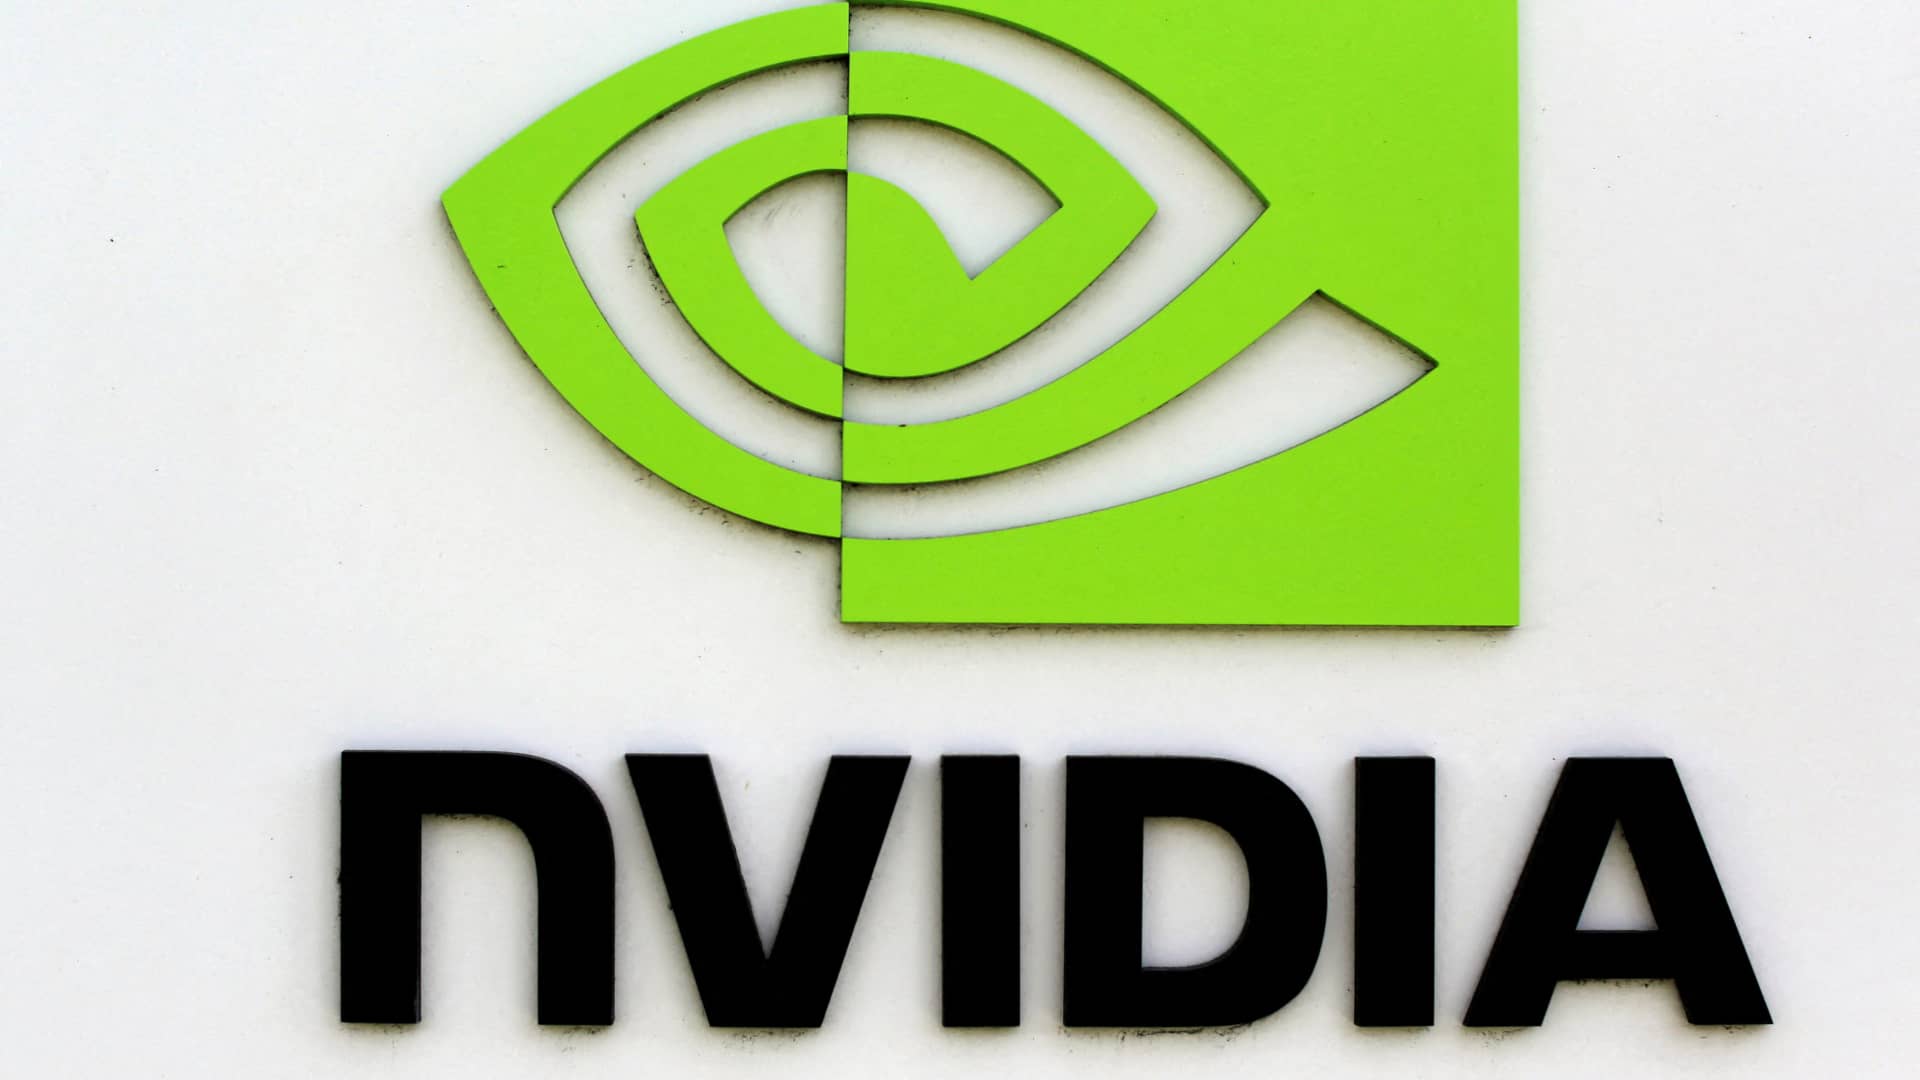 Renaissance Macro Chair afferma che Nvidia potrebbe rimanere bloccata per mesi